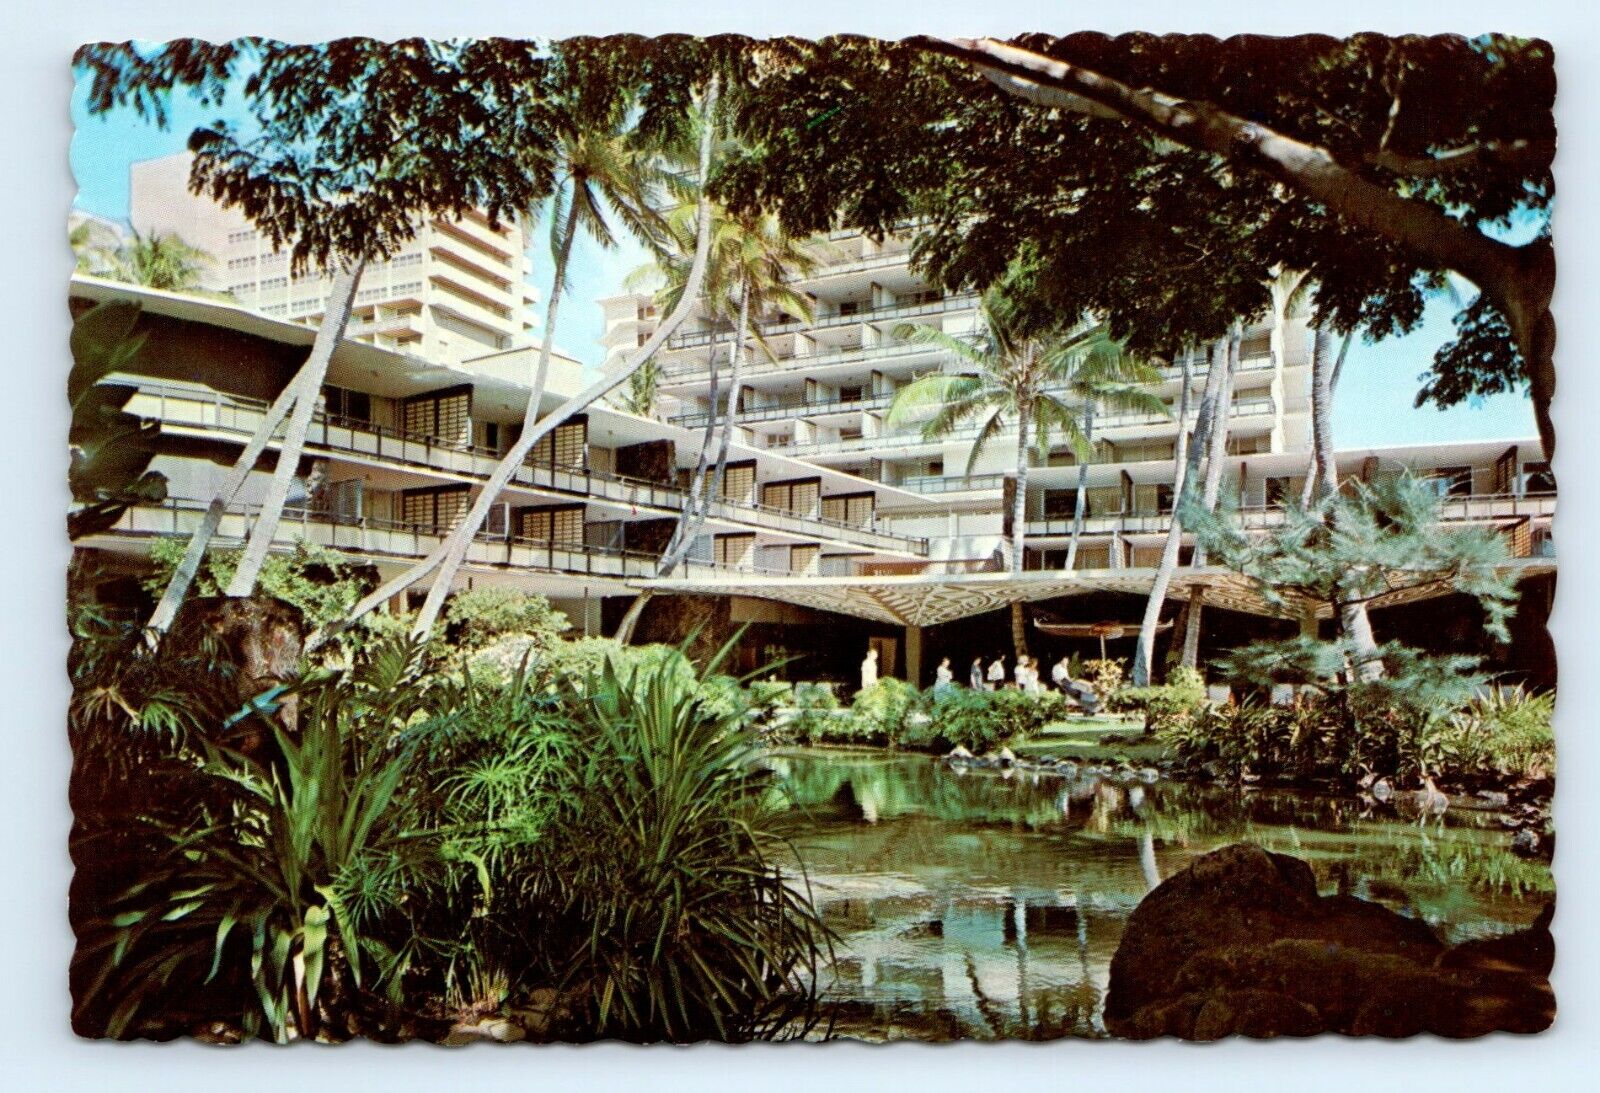 Garden Pool Hilton Hawaiian Village Hotel Waikiki HI Postcard